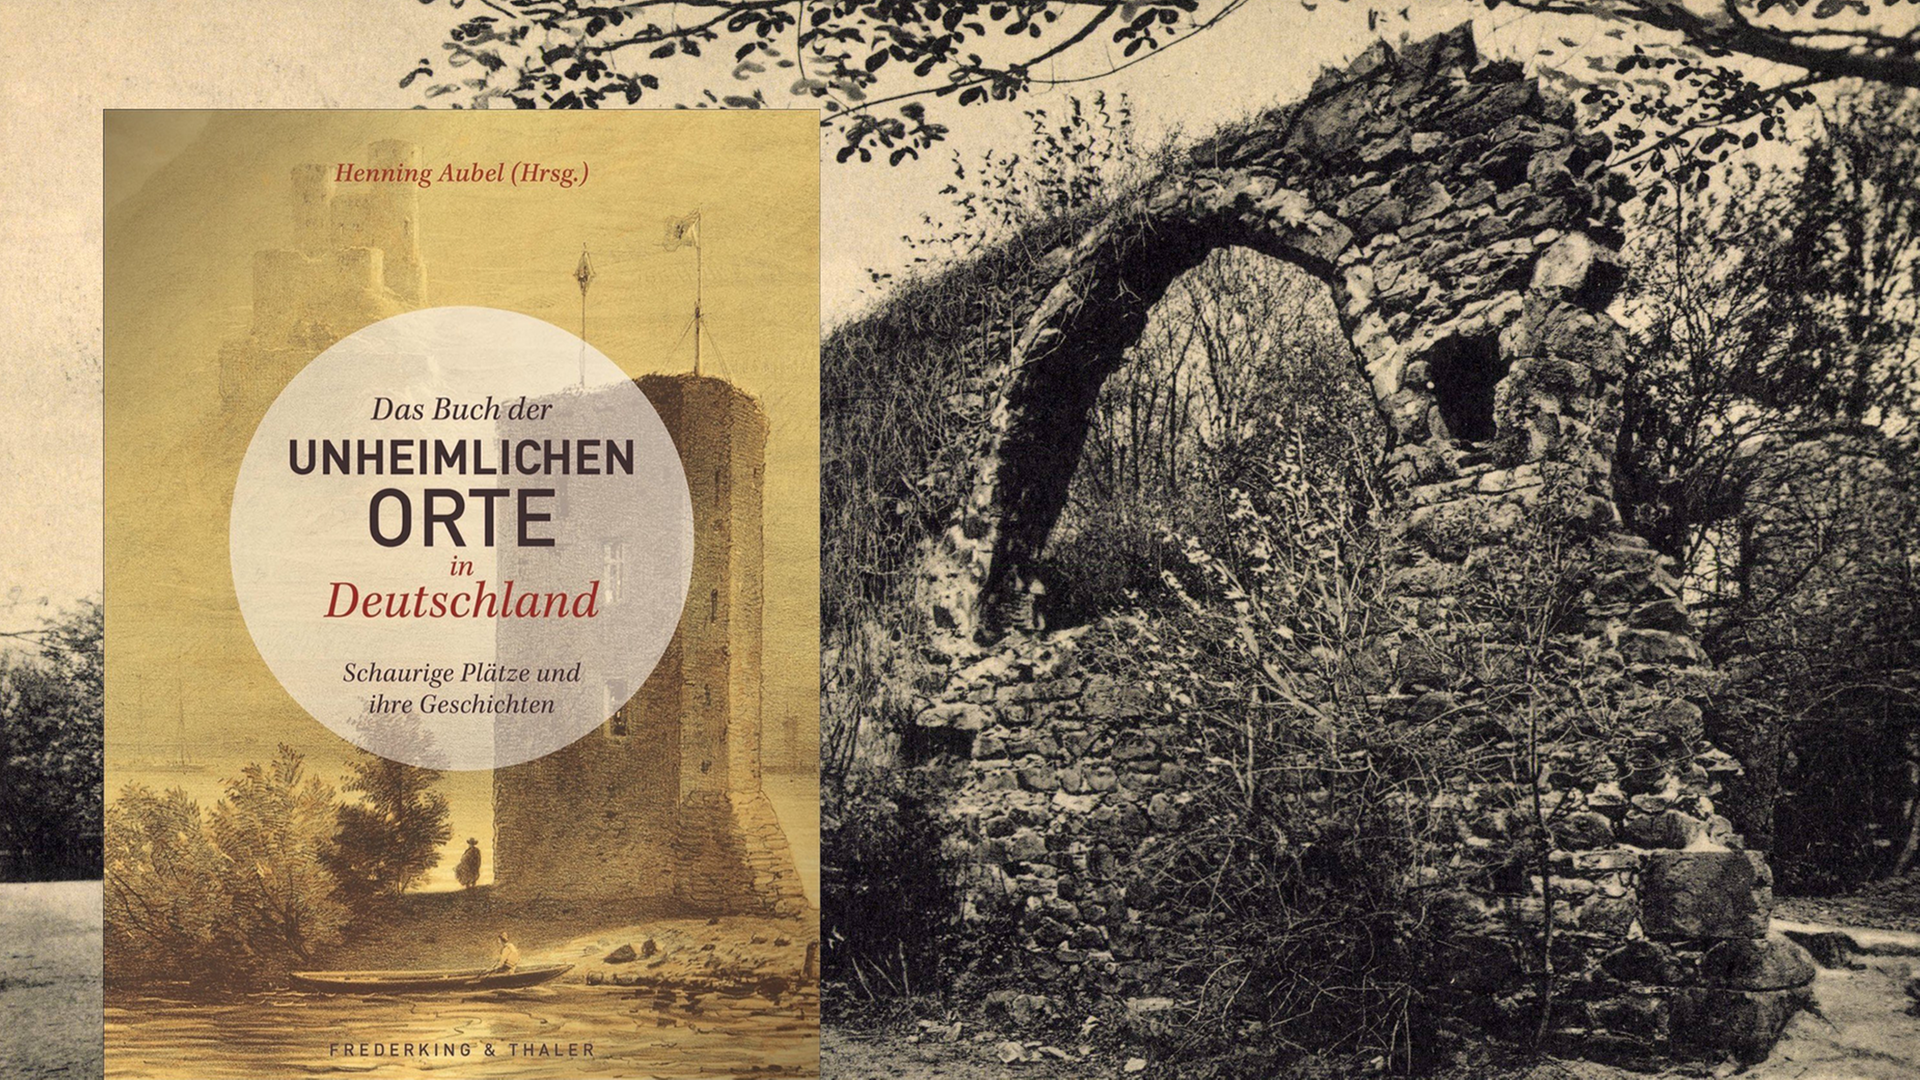 Eine Schwarzweiß-Fotografie mit Patina zeigt die verfallene Ruine eines alten Klosters. Davor gestellt ist das Cover zu Henning Aubels "Buch der Unheimlichen Orte". Auf dem Buch zu sehen ist die Zeichnung eines alten Schlossturms.